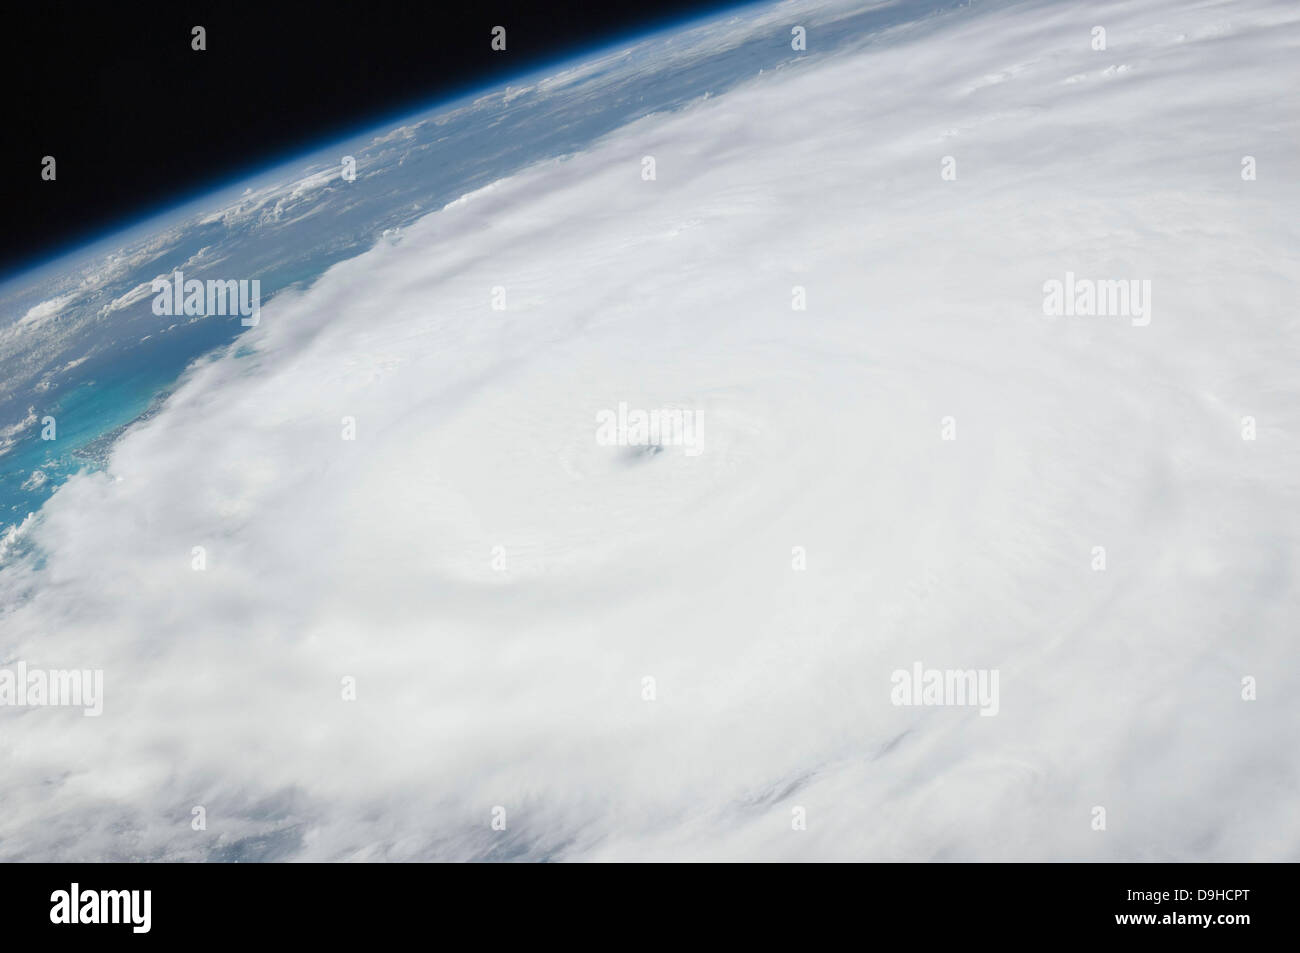 Photo: Inside the Eye of Hurricane Earl - SpaceRef